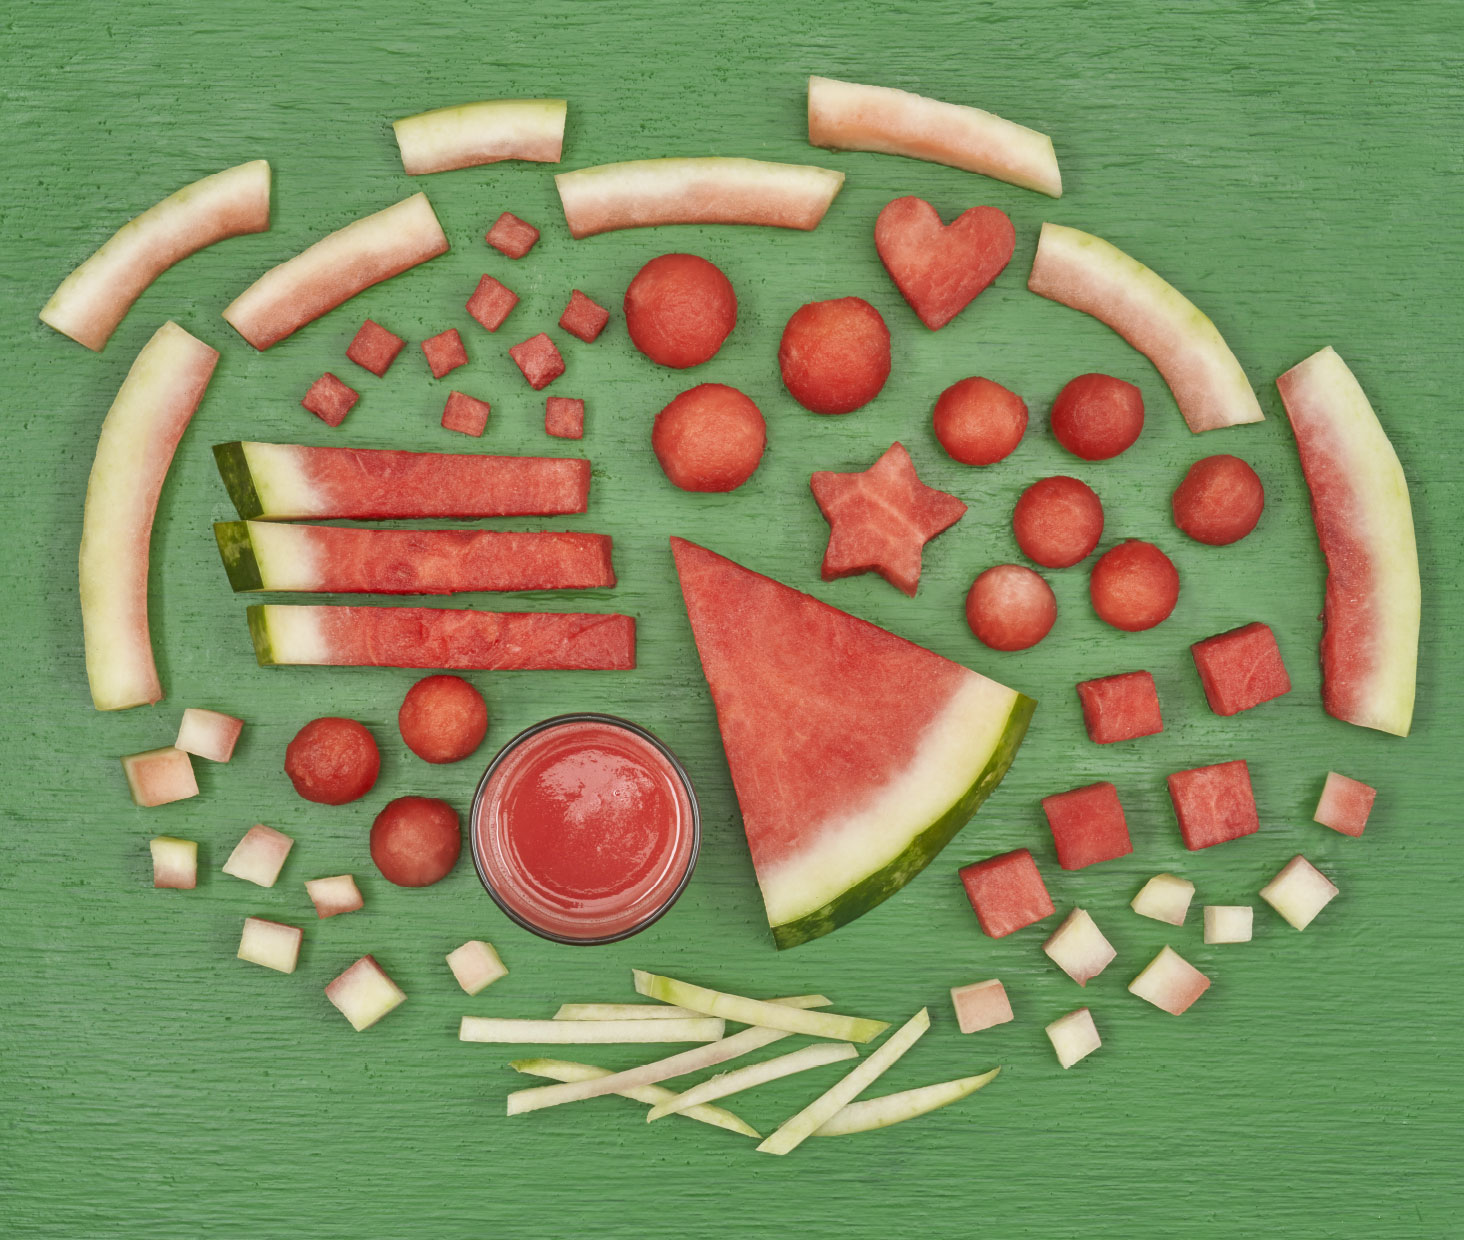 Watermelon cut butchery-style on a green board